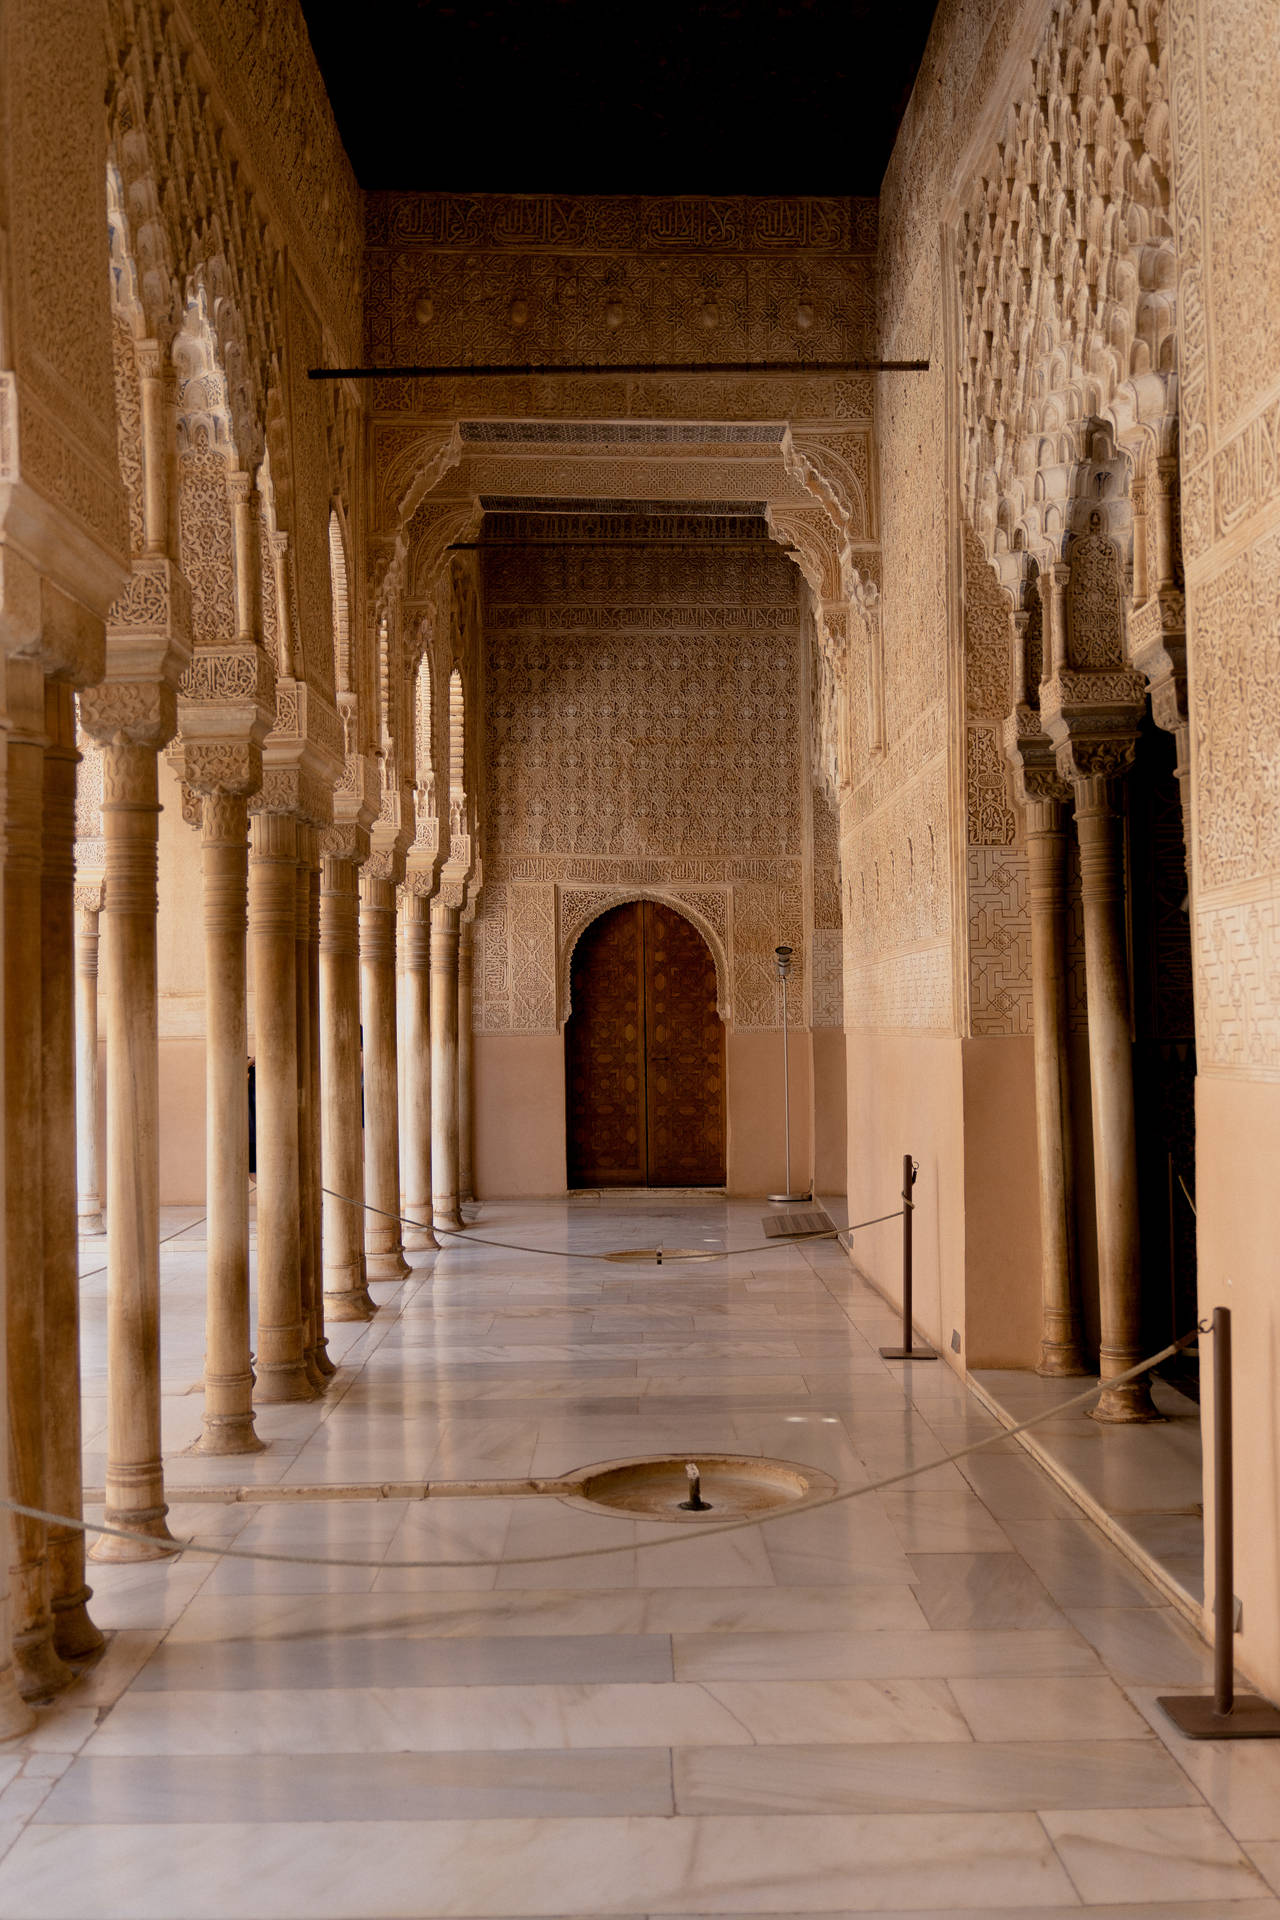 Alhambrainteriörhallway - Alhambra-interiörhallen Wallpaper